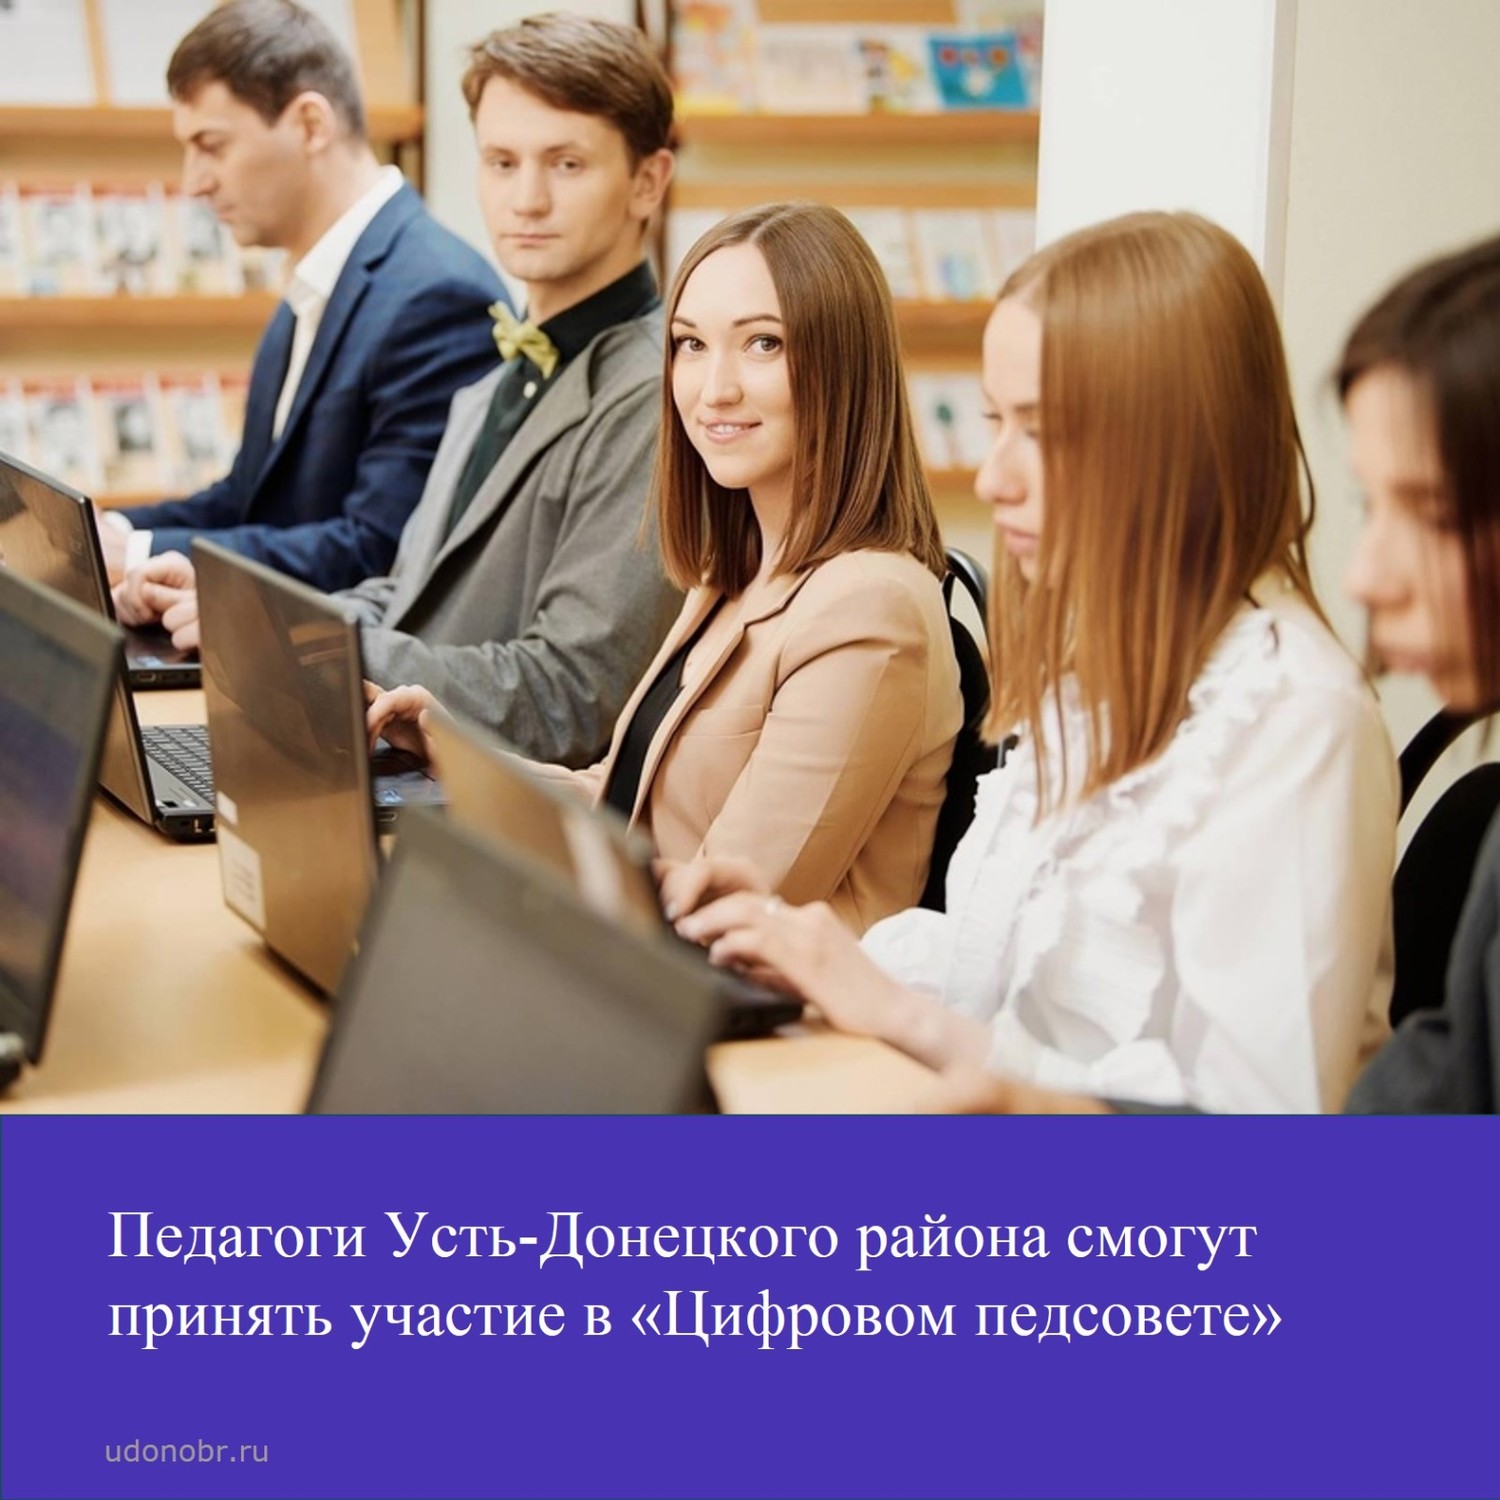 Педагоги Усть-Донецкого района смогут принять участие в «Цифровом педсовете»